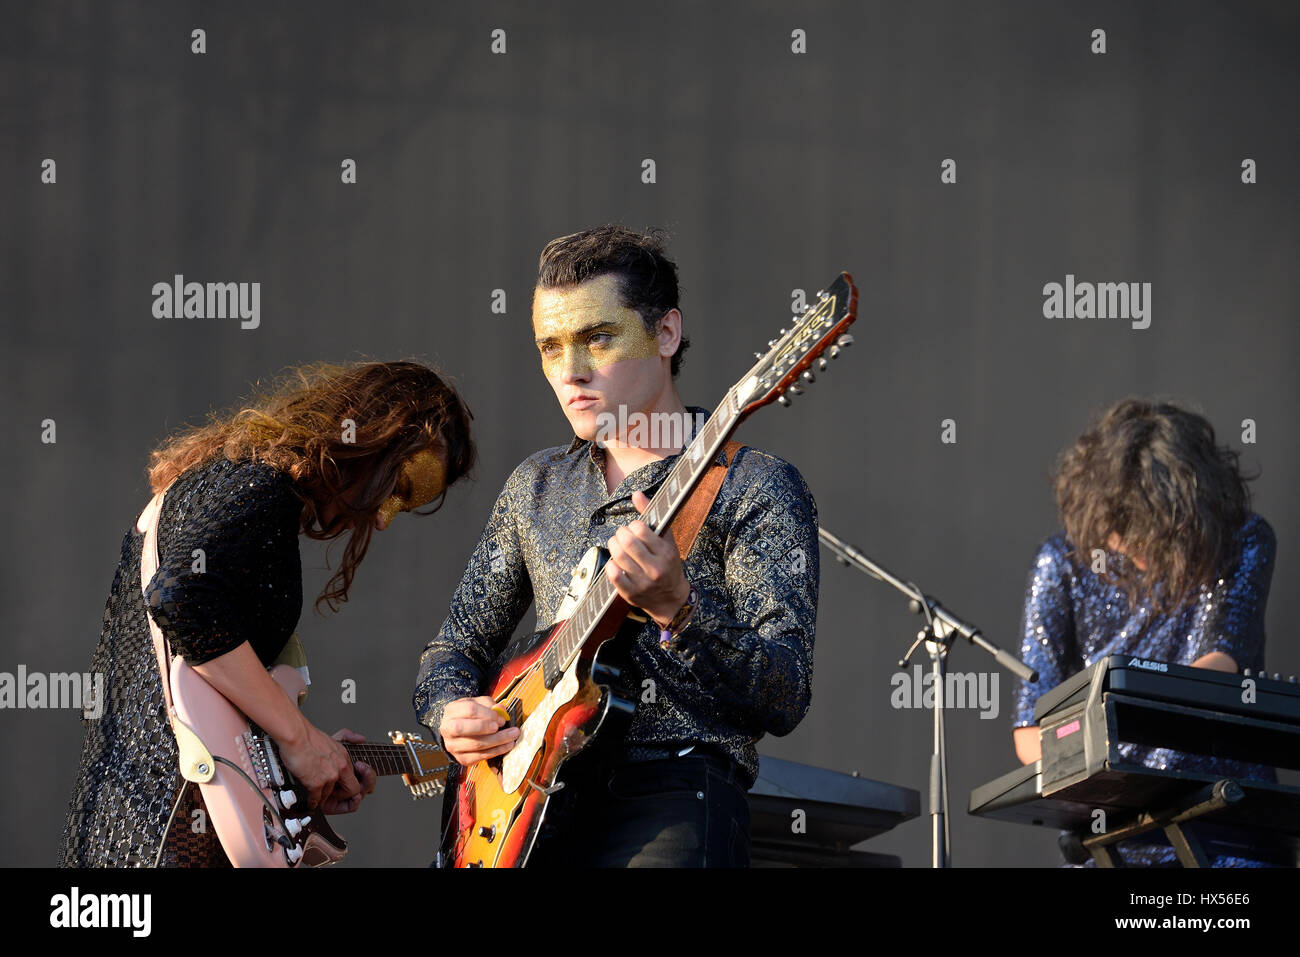 BENICASSIM, ESPAGNE - 17 juil : Moodoid (fusion rock band) en concert au Festival le 17 juillet 2015 à Benicassim, Espagne. Banque D'Images